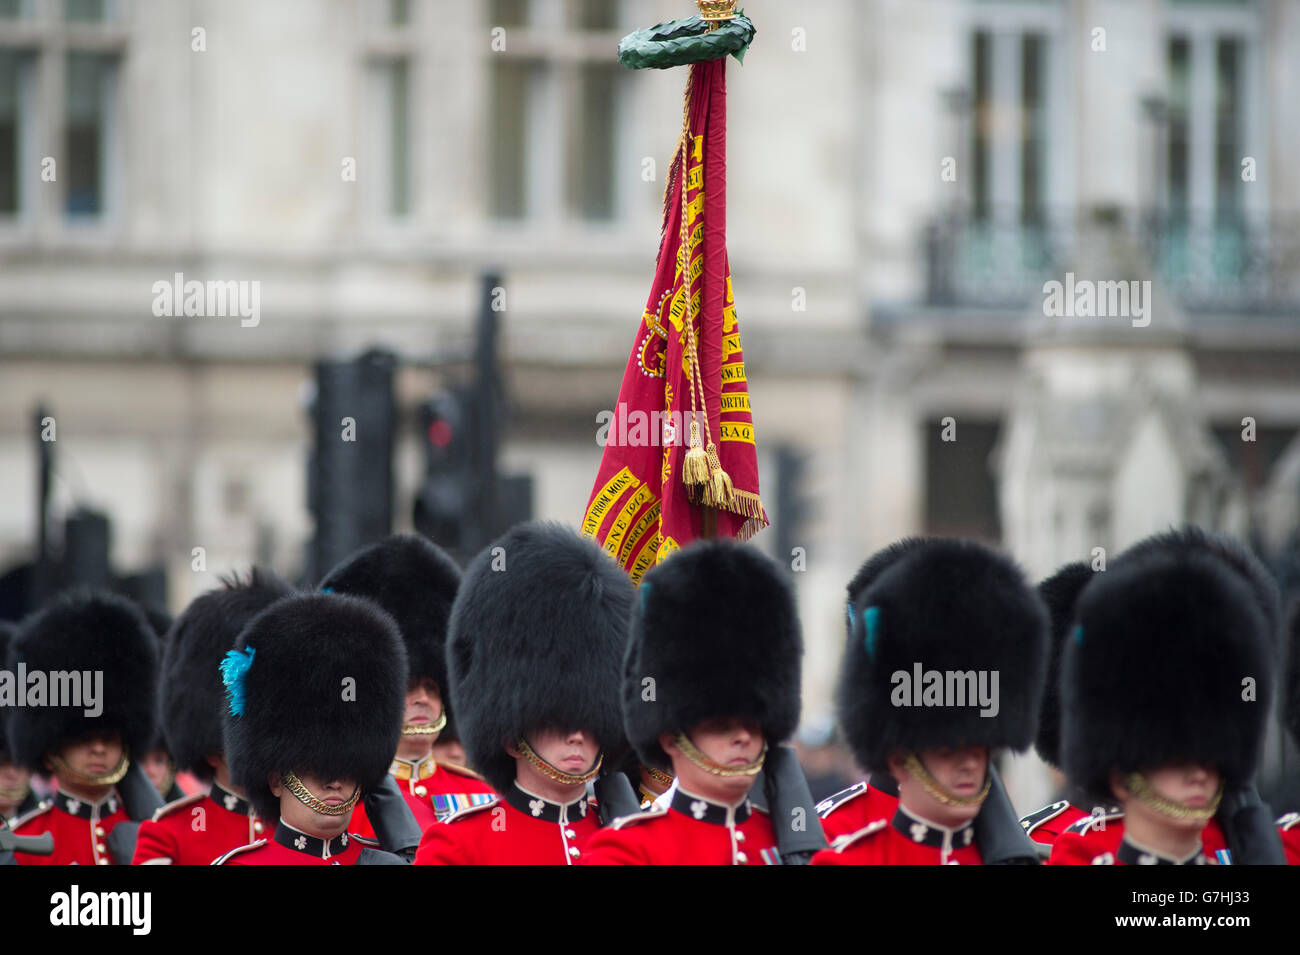 Couleur de l'Irish Guards ont défilé à la place du Parlement pour l'État 2016 Ouverture du Parlement à Londres Banque D'Images